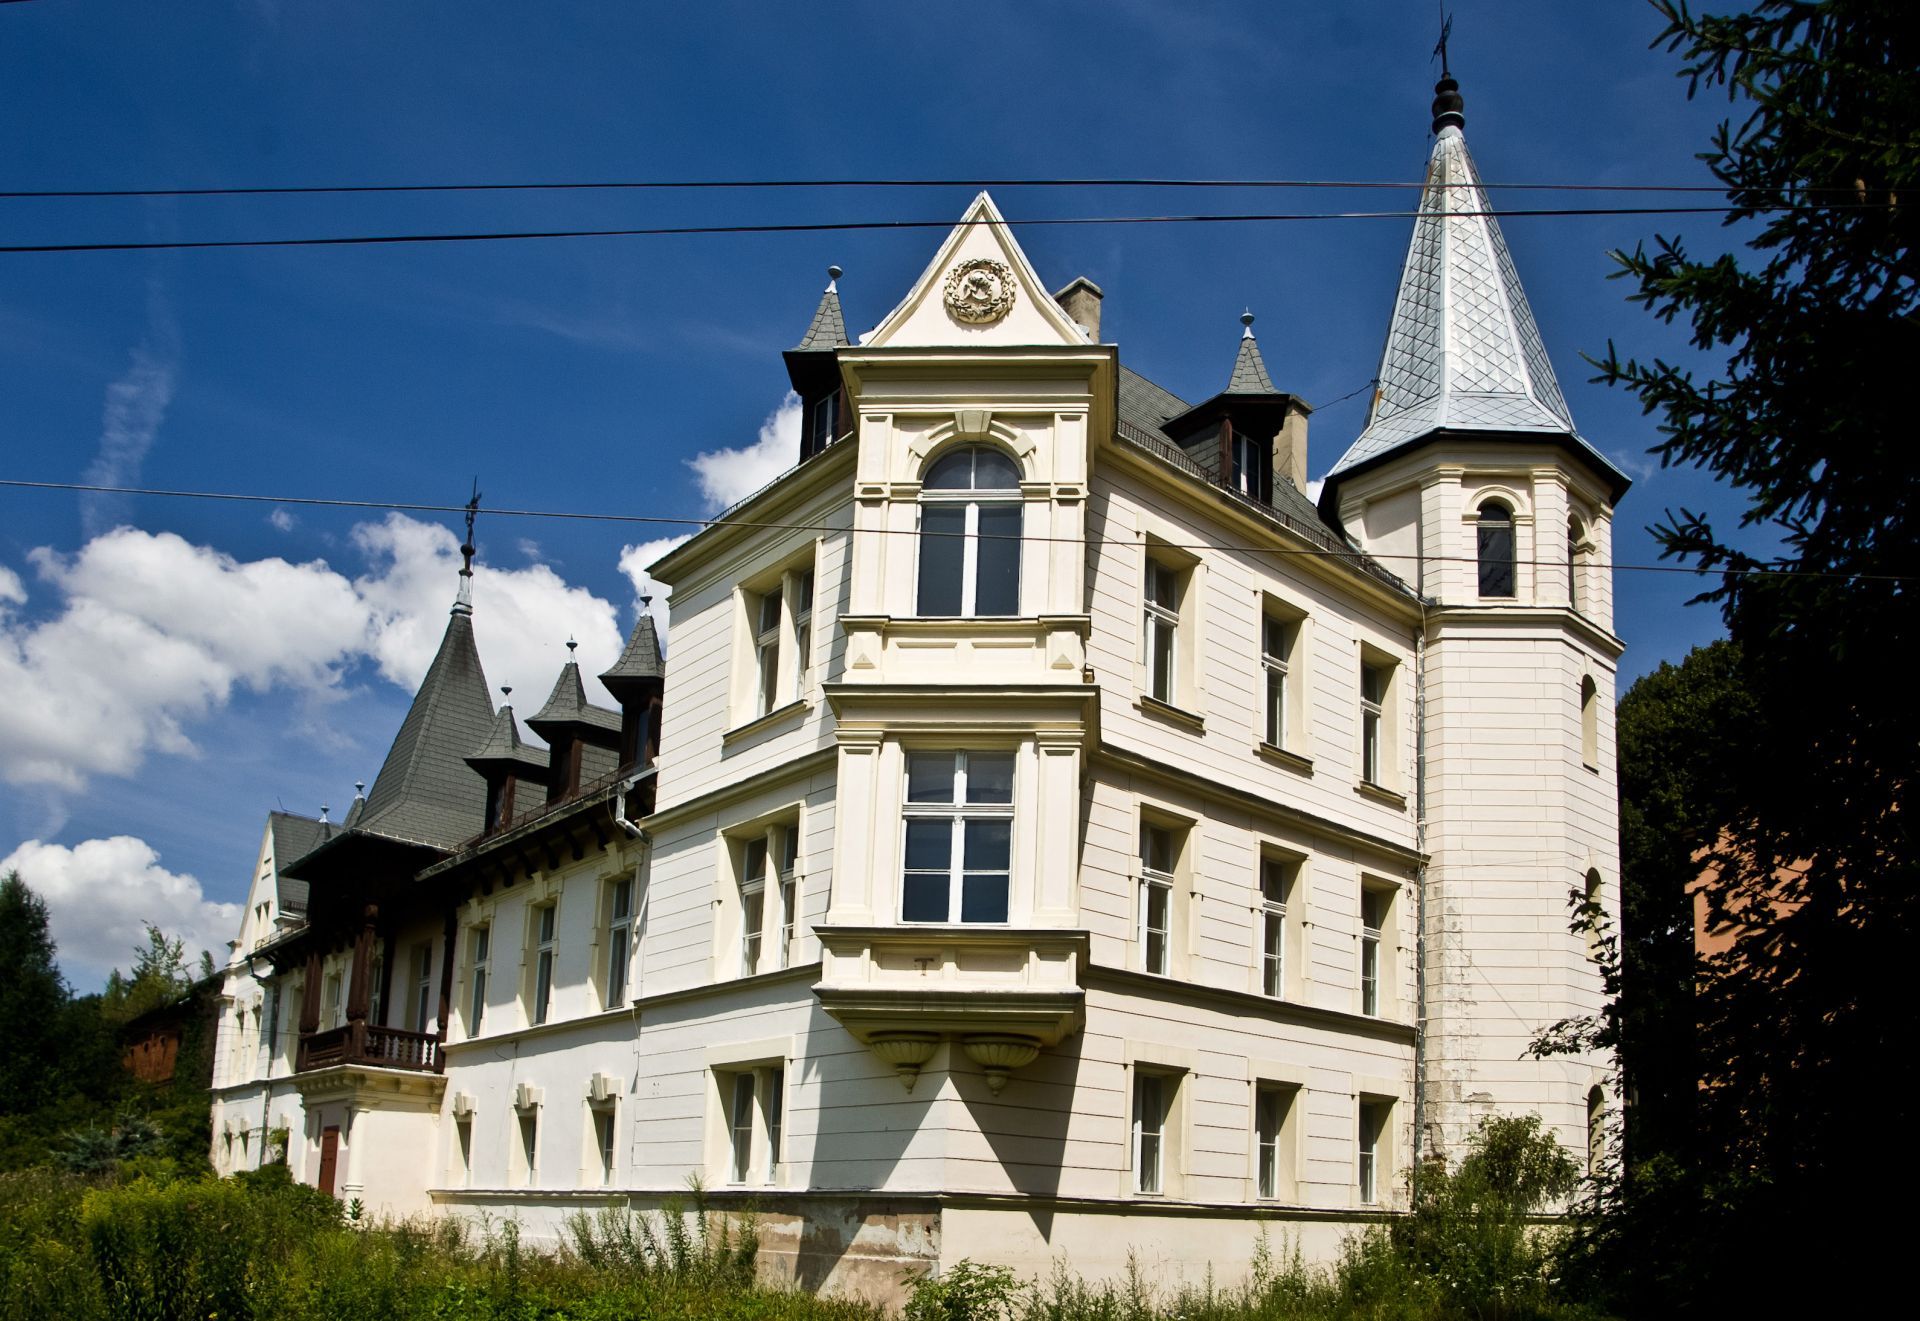 Dolny Śląsk: Państwowe zabytkowe pałace na sprzedaż. Który najpiękniejszy?